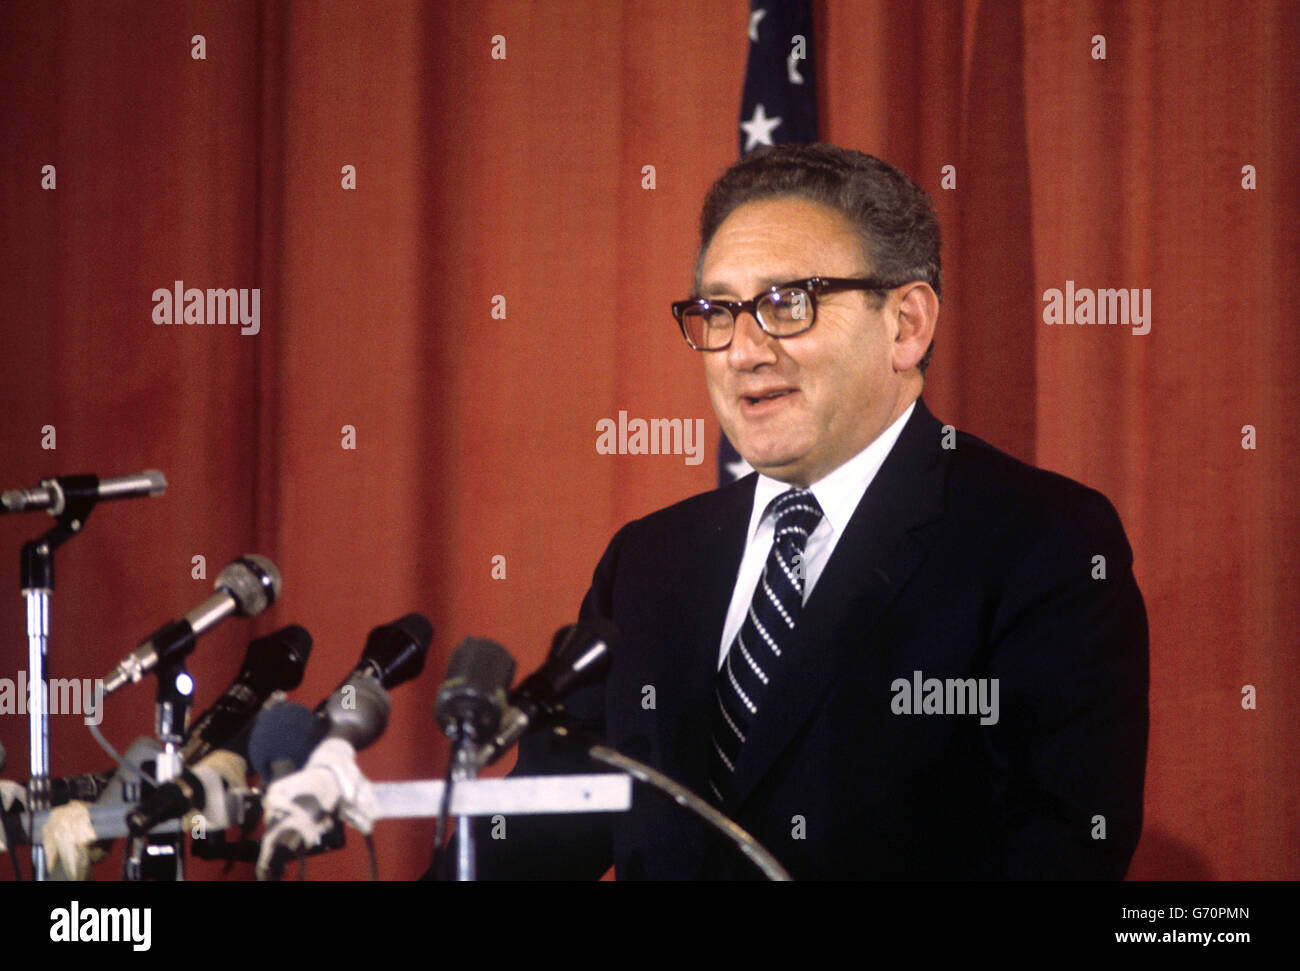 Il Dr. Henry Kissinger, Segretario di Stato degli Stati Uniti, a una conferenza stampa dell'Ambasciata americana alla fine della sua visita di un giorno a Londra. Foto Stock